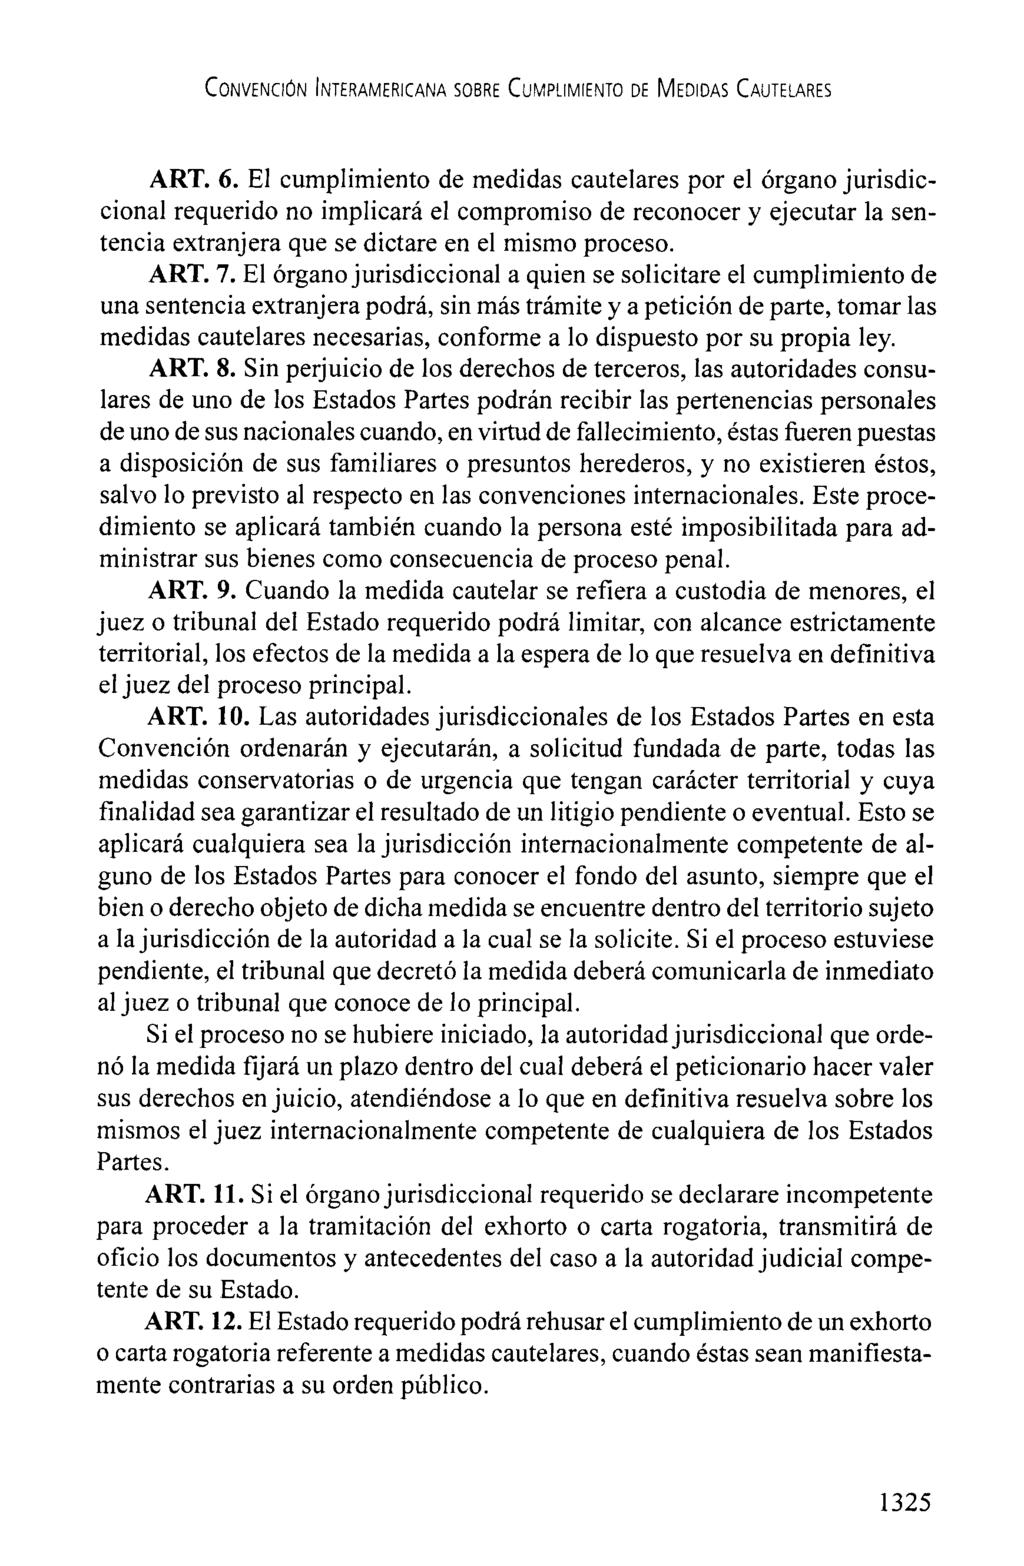 CONVECION INTERAMERICANA SOBRE CUMPUMIENTO DE MEDIDAS CAUTELARES ART. 6.